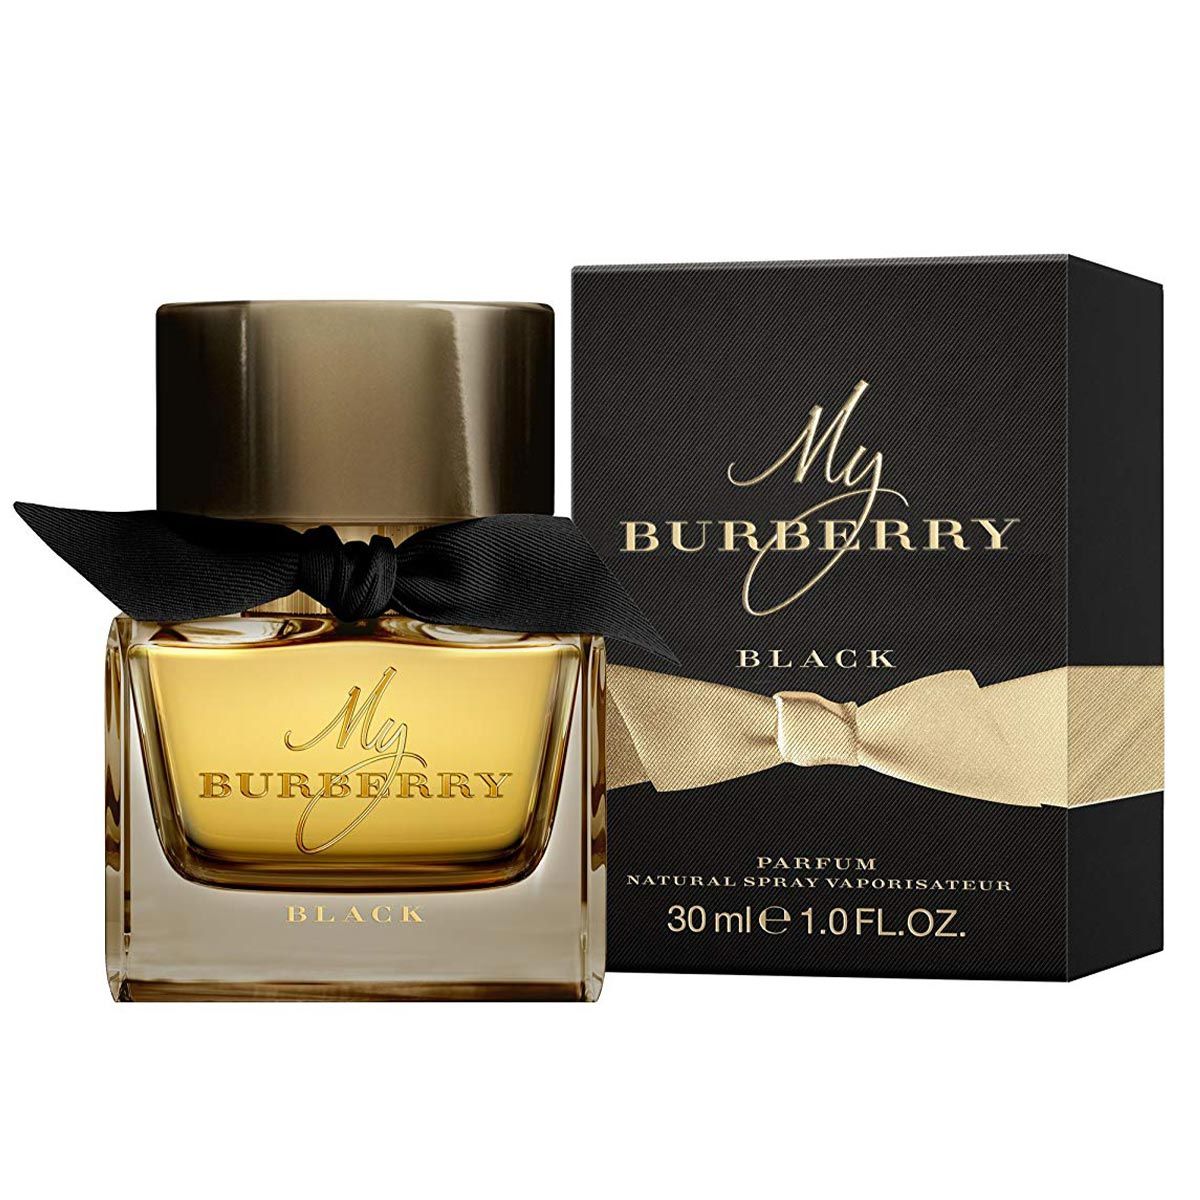  My Burberry Black Eau de Parfum 